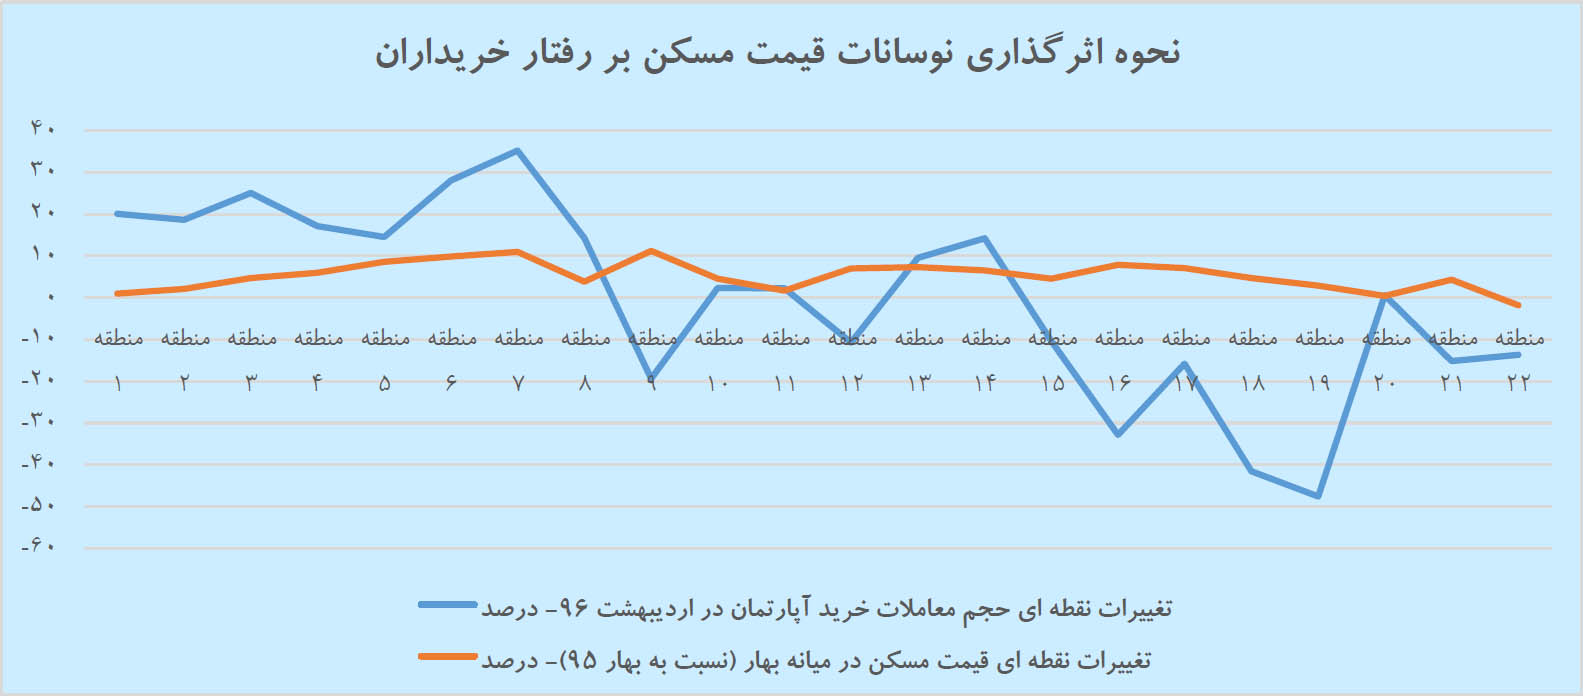 افت ۱۵ درصدی خرید مسکن در تهران